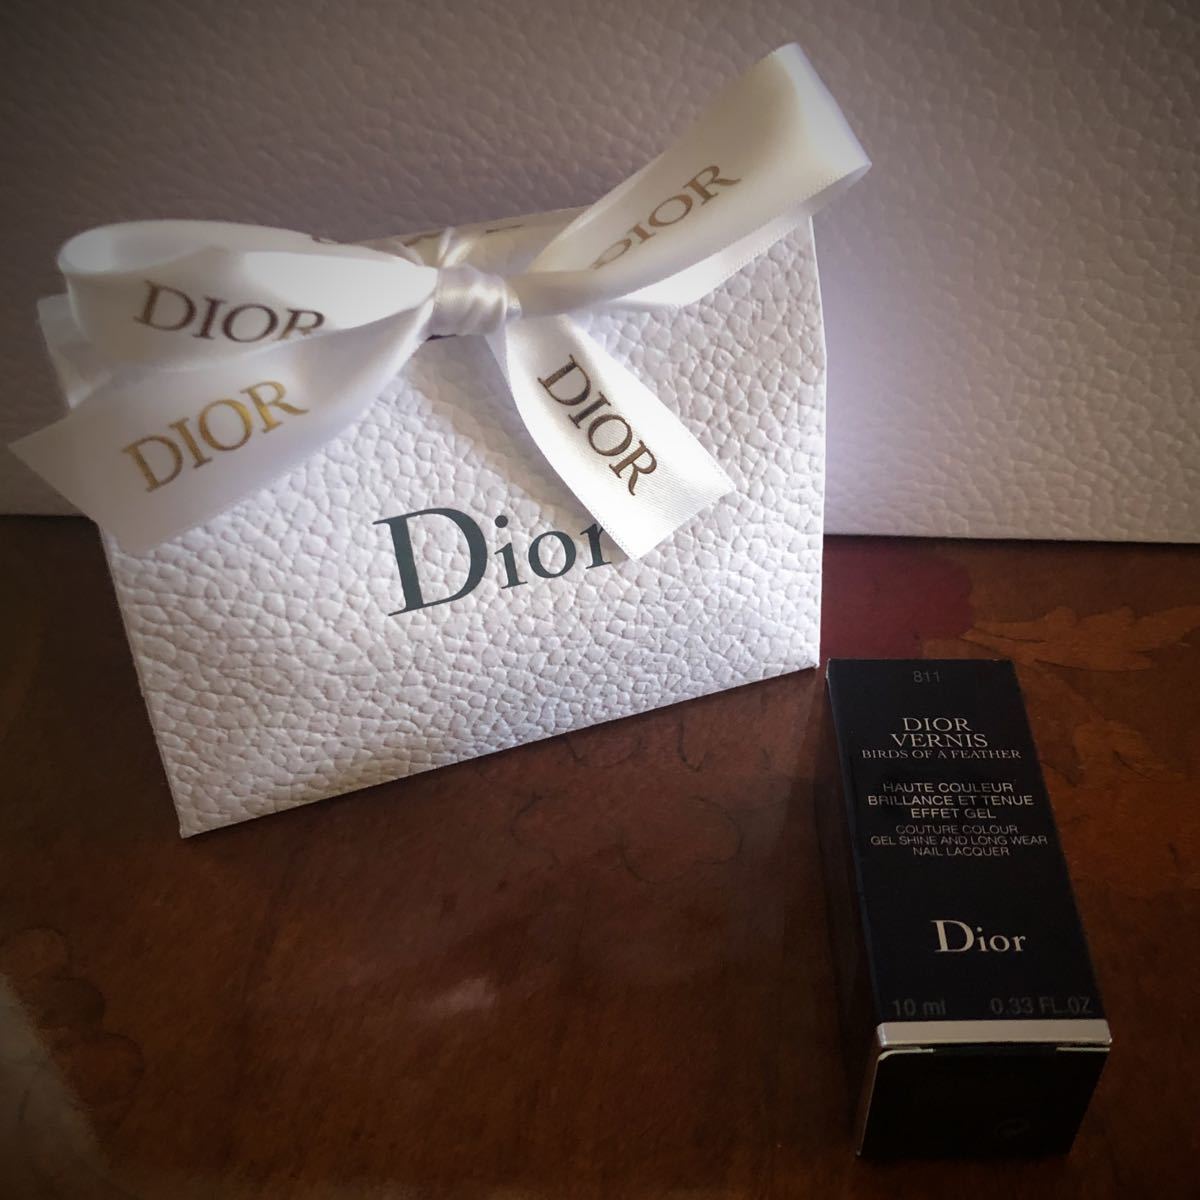 Dior ディオール ヴェルニ 811 ワイルド ウィングス 限定 ネイル プレゼント ラッピング付